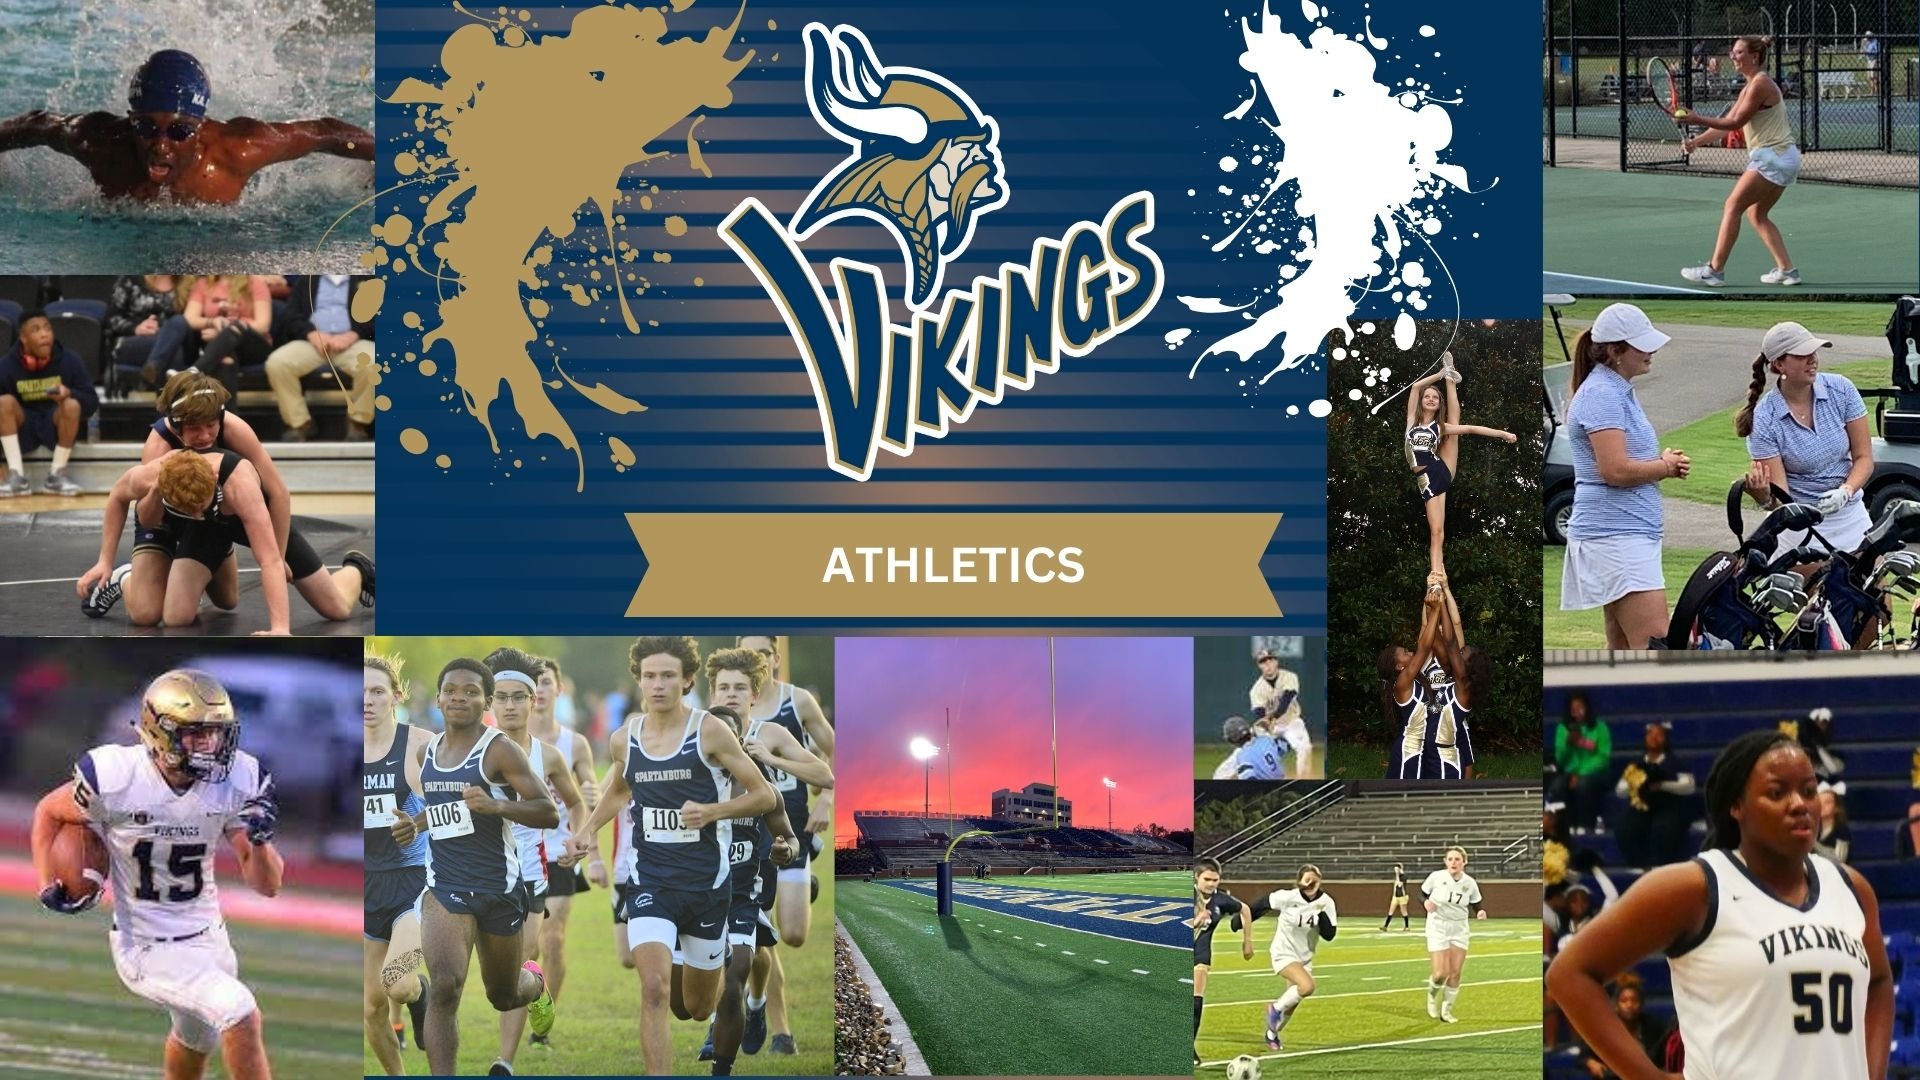 Slide 2 - Vikings Athletics